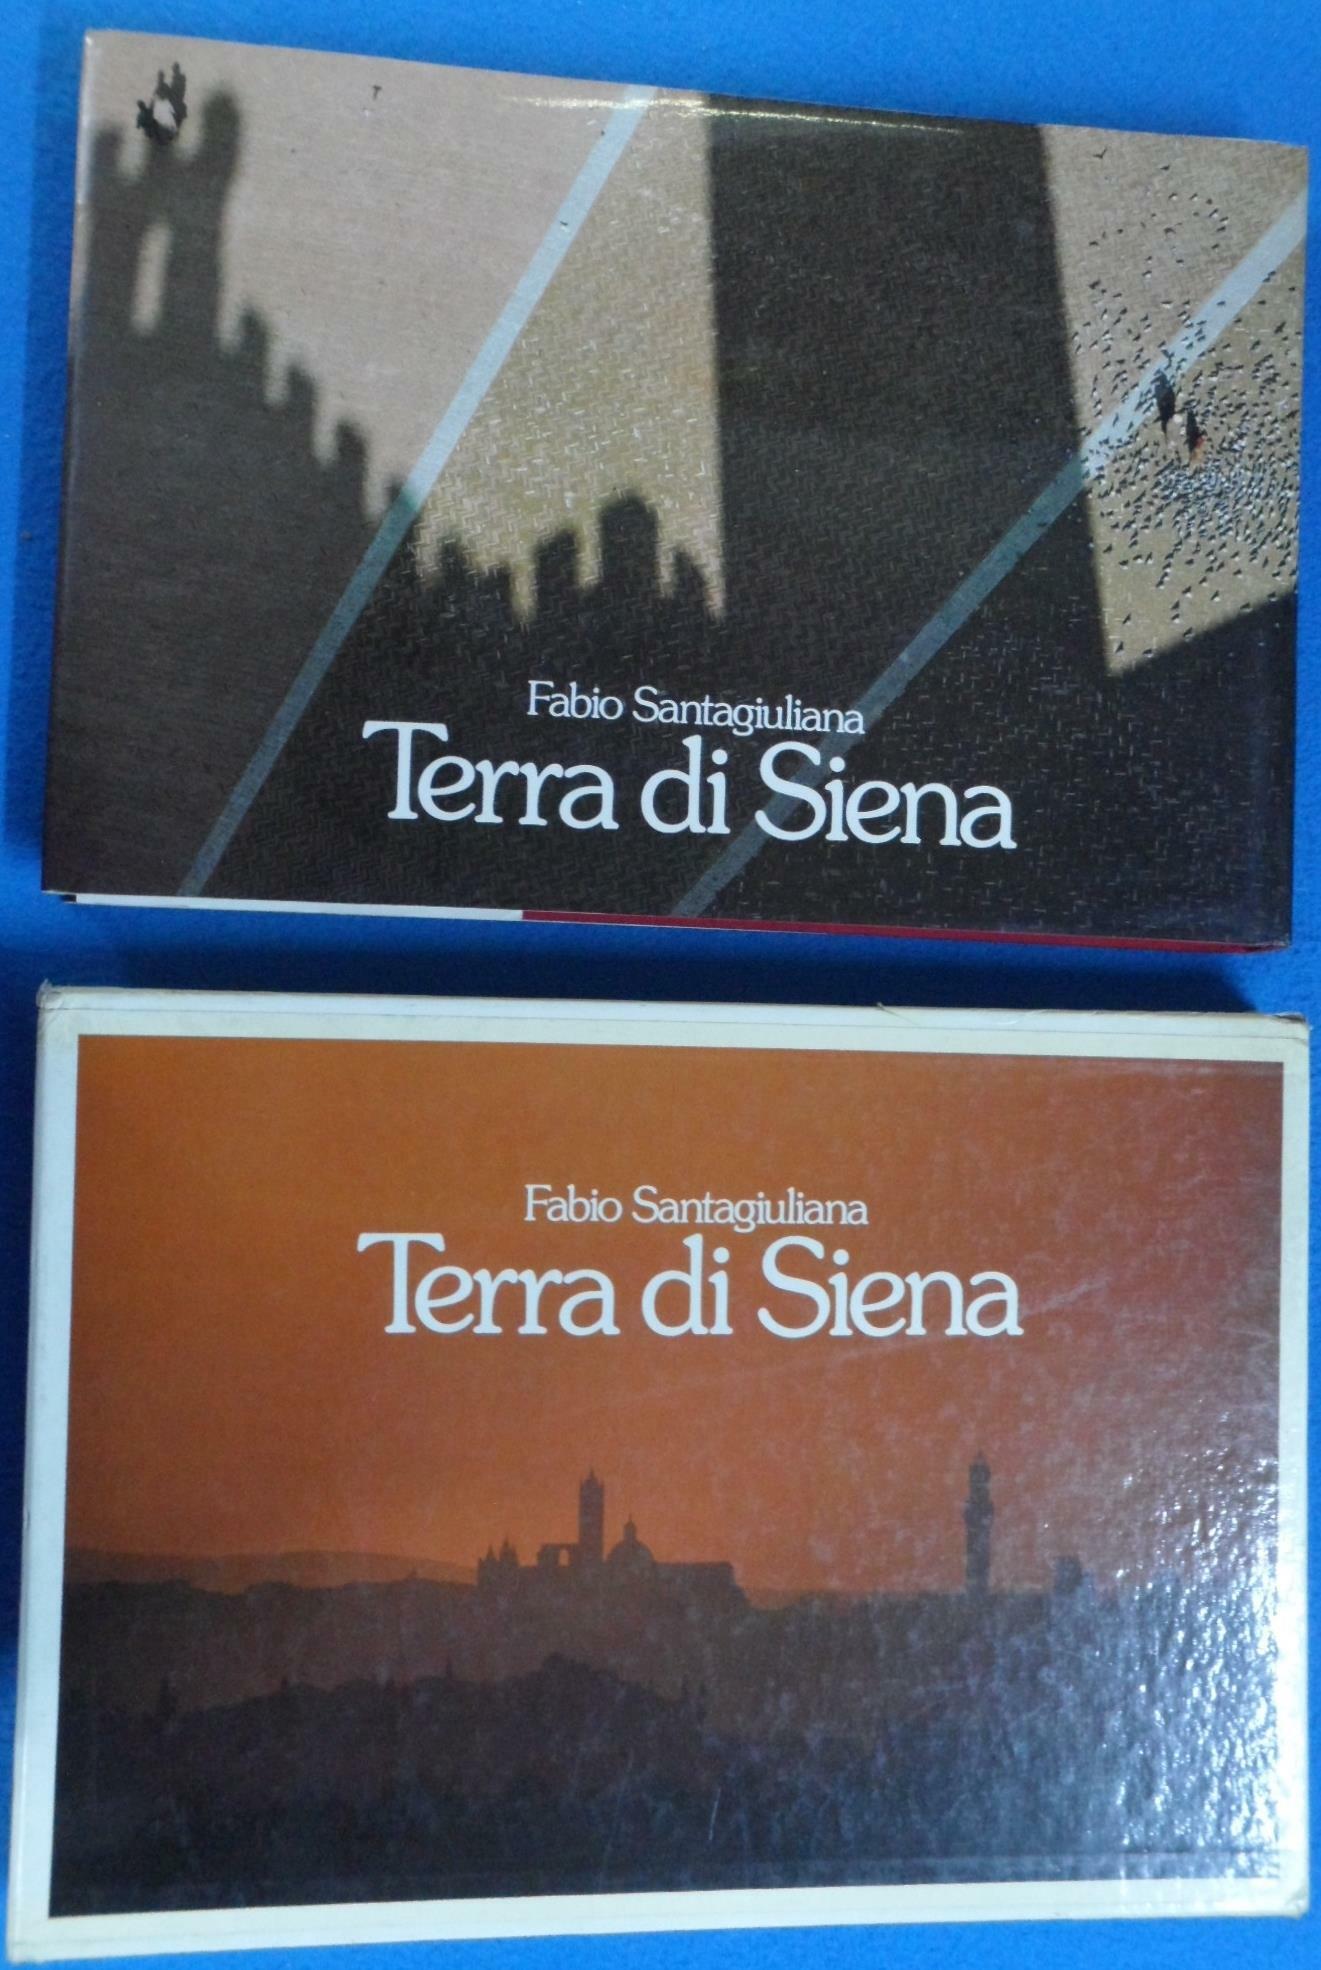 [중고] Terra di Siena  [Hardcover]  9788870570397  ☞ 상현서림 ☜/ 사진의 제품  /